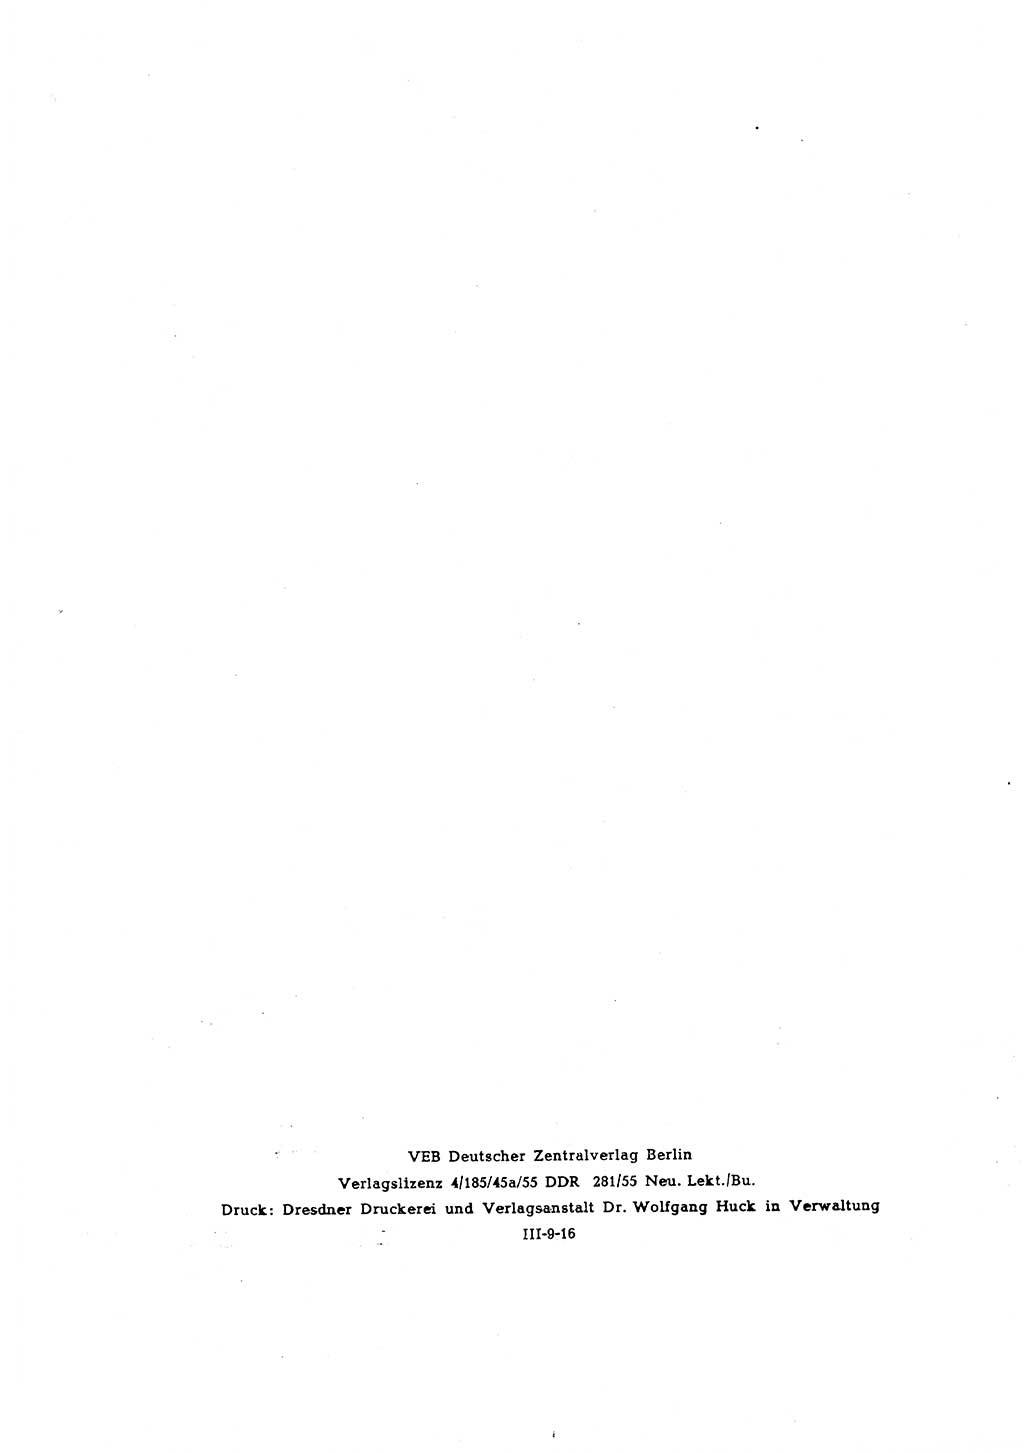 Materialien zum Strafrecht, Besonderer Teil [Deutsche Demokratische Republik (DDR)] 1955, Seite 4 (Mat. Strafr. BT DDR 1955, S. 4)